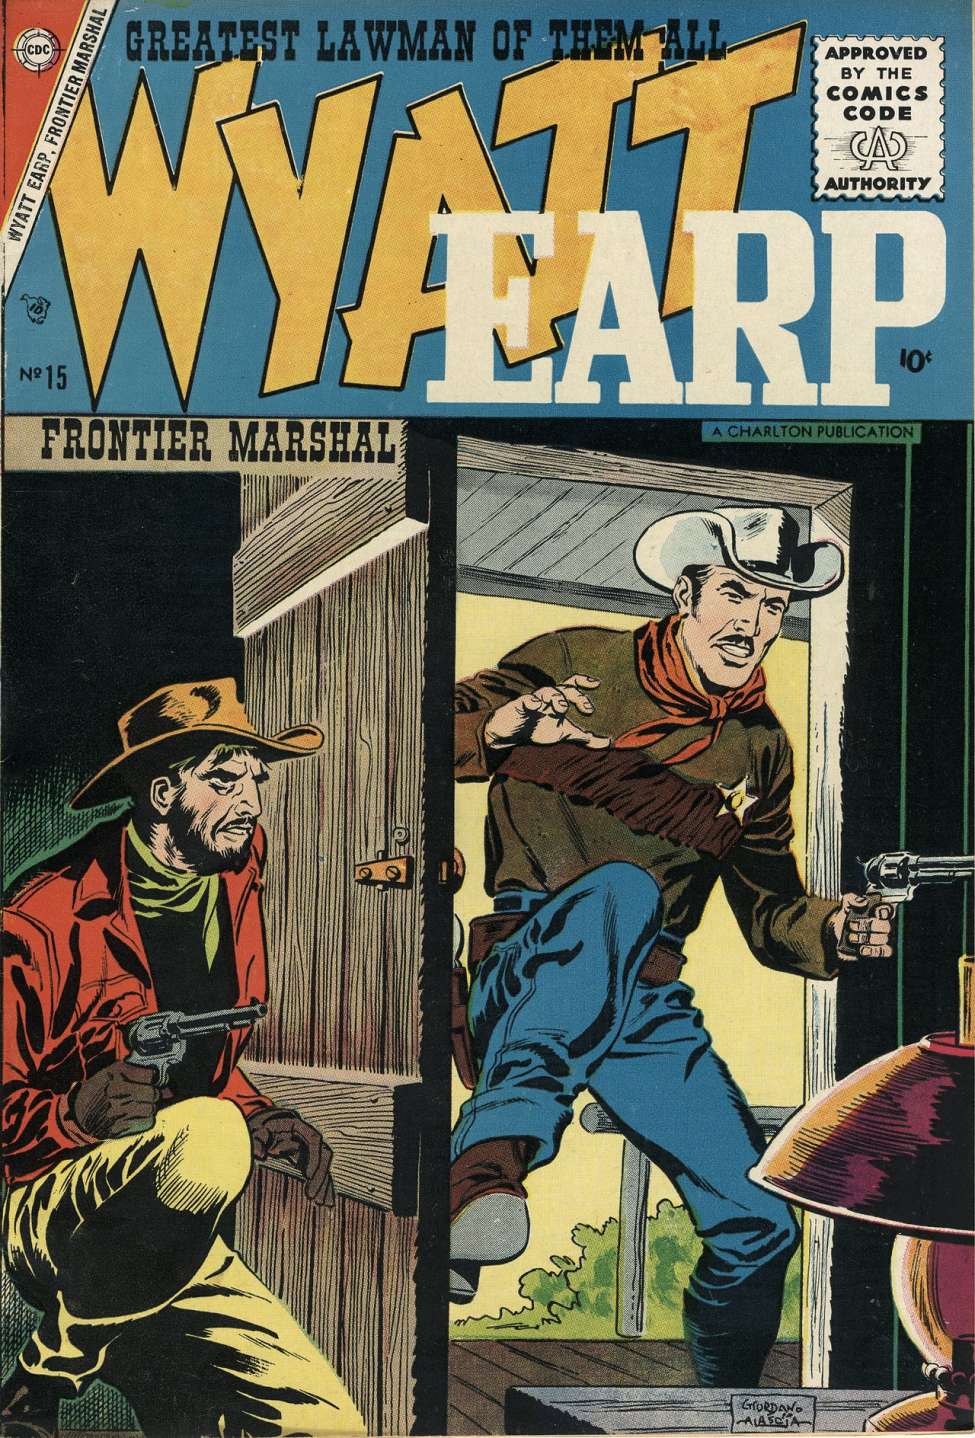 Book Cover For Wyatt Earp Frontier Marshal 15